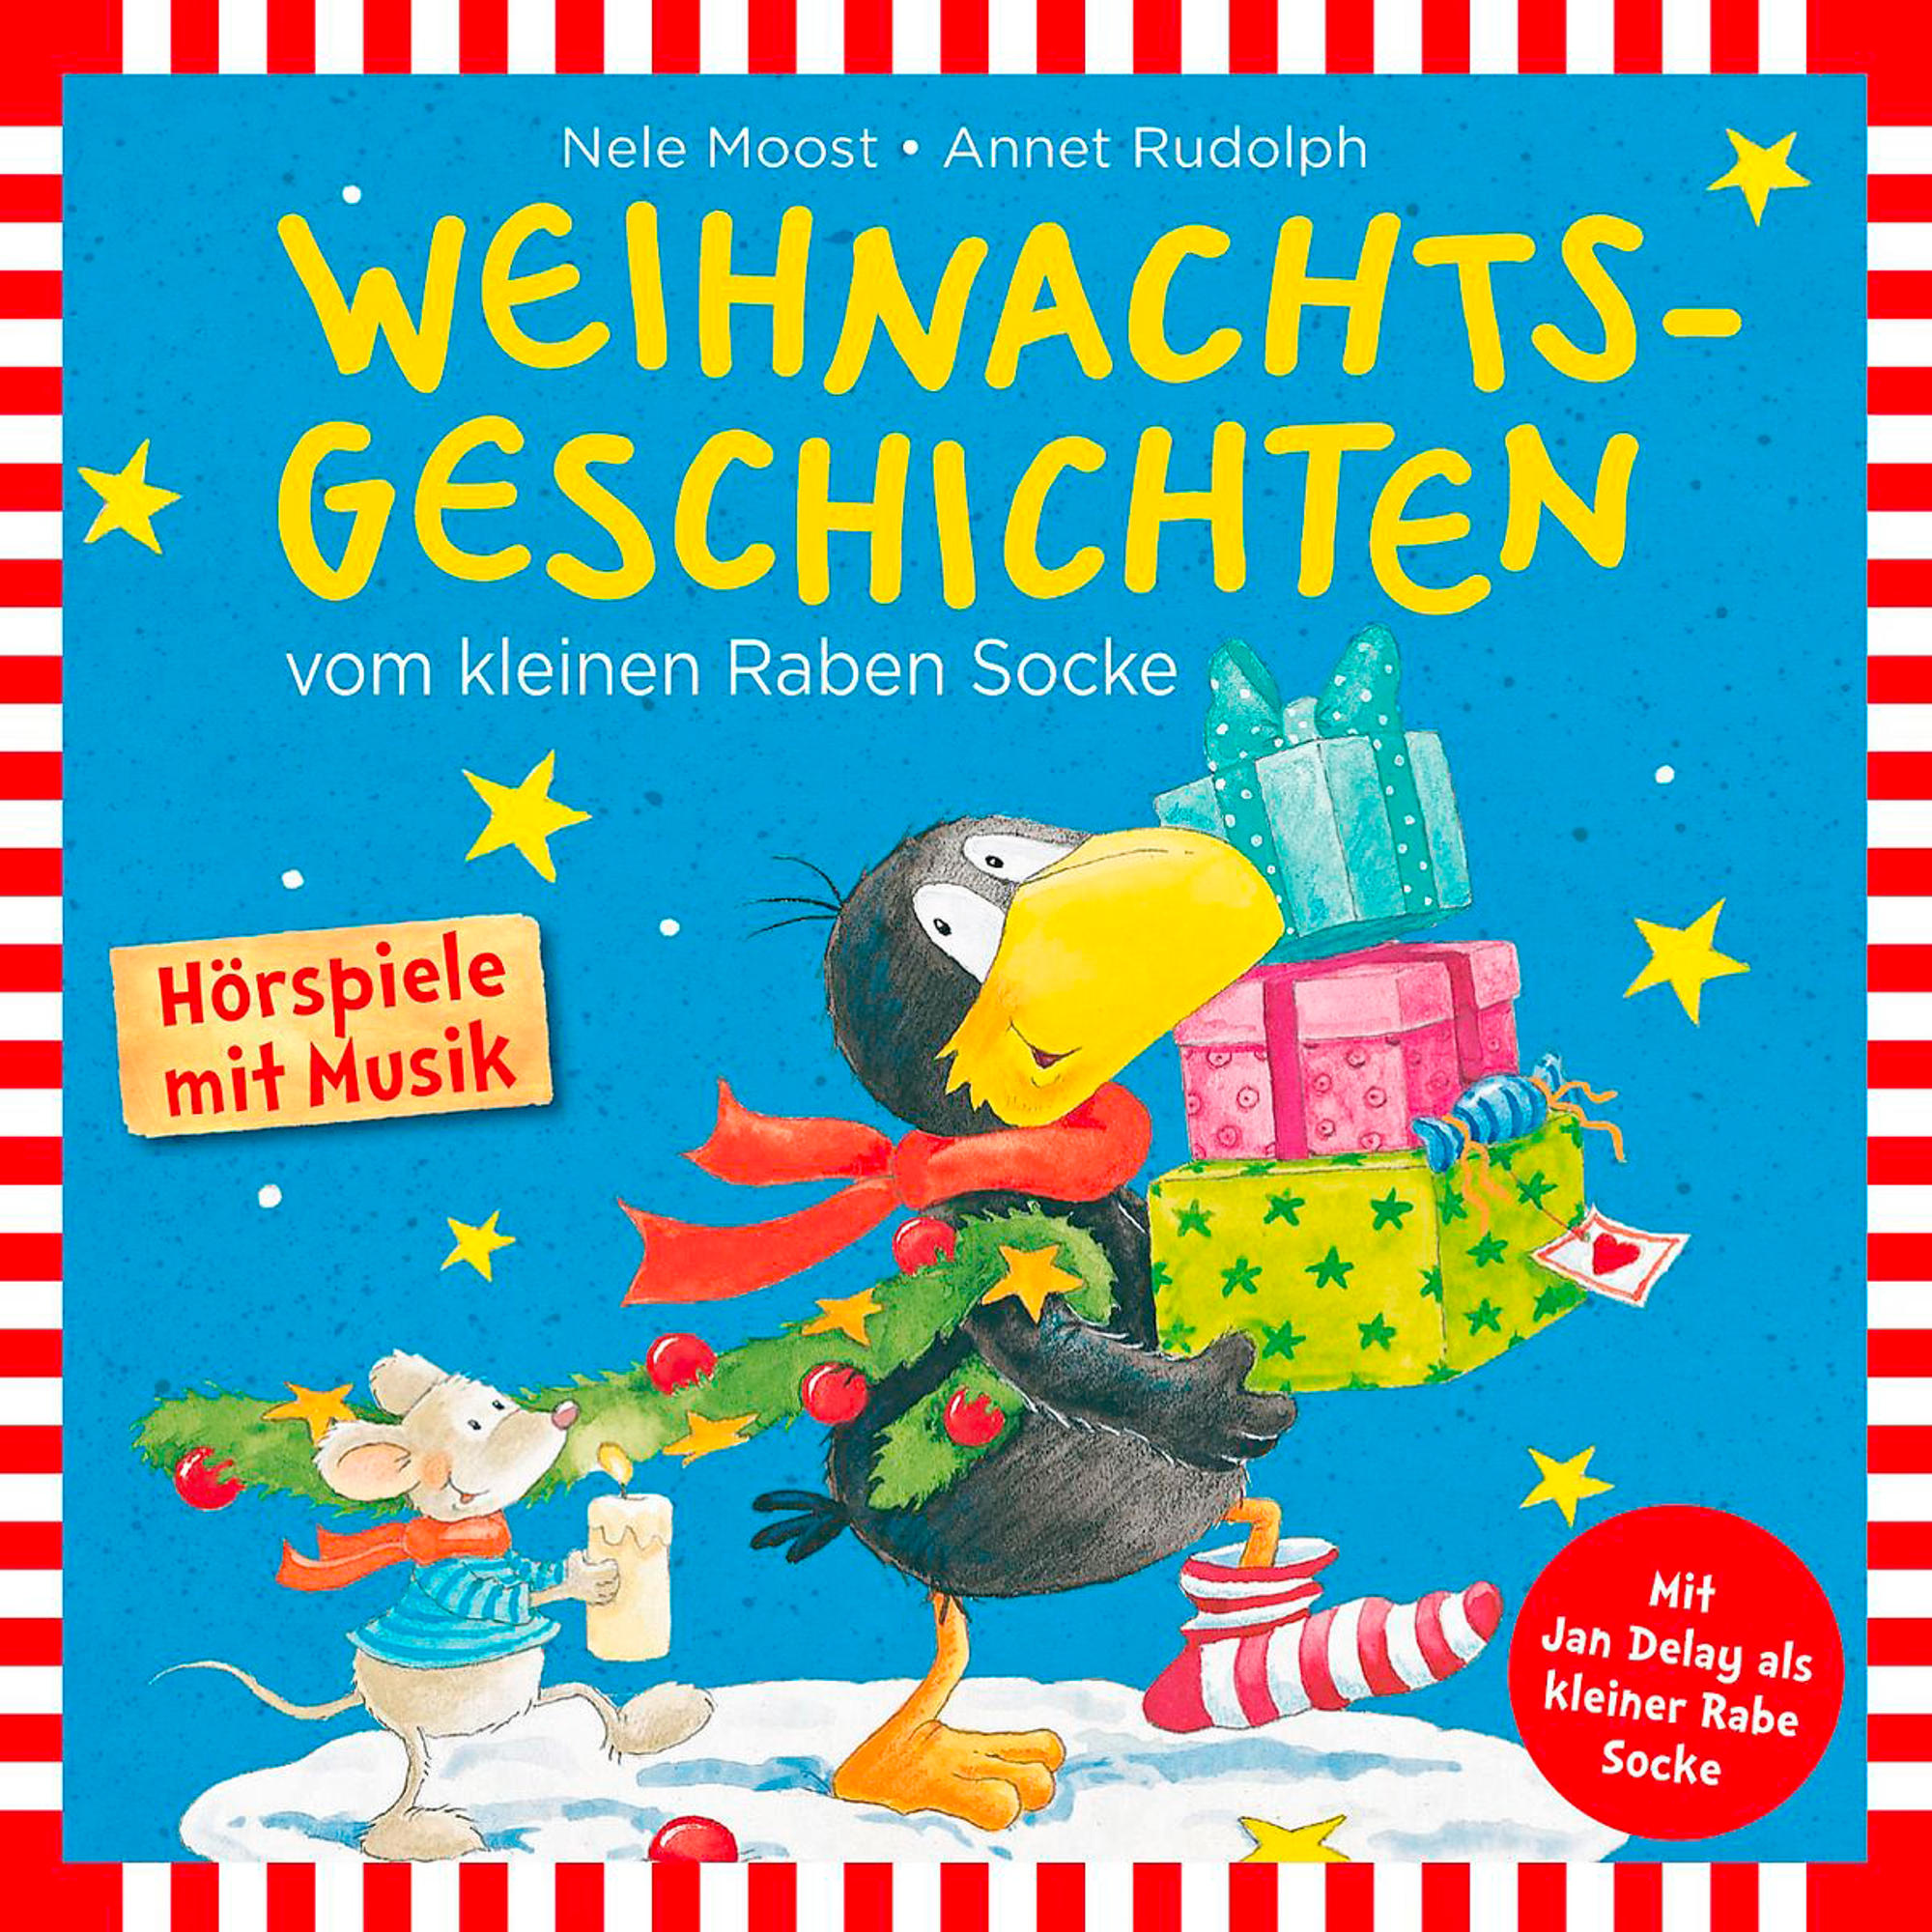 Rabe Socke - Socke Raben Weihnachtsgeschichten Vom Kleinen (CD) 